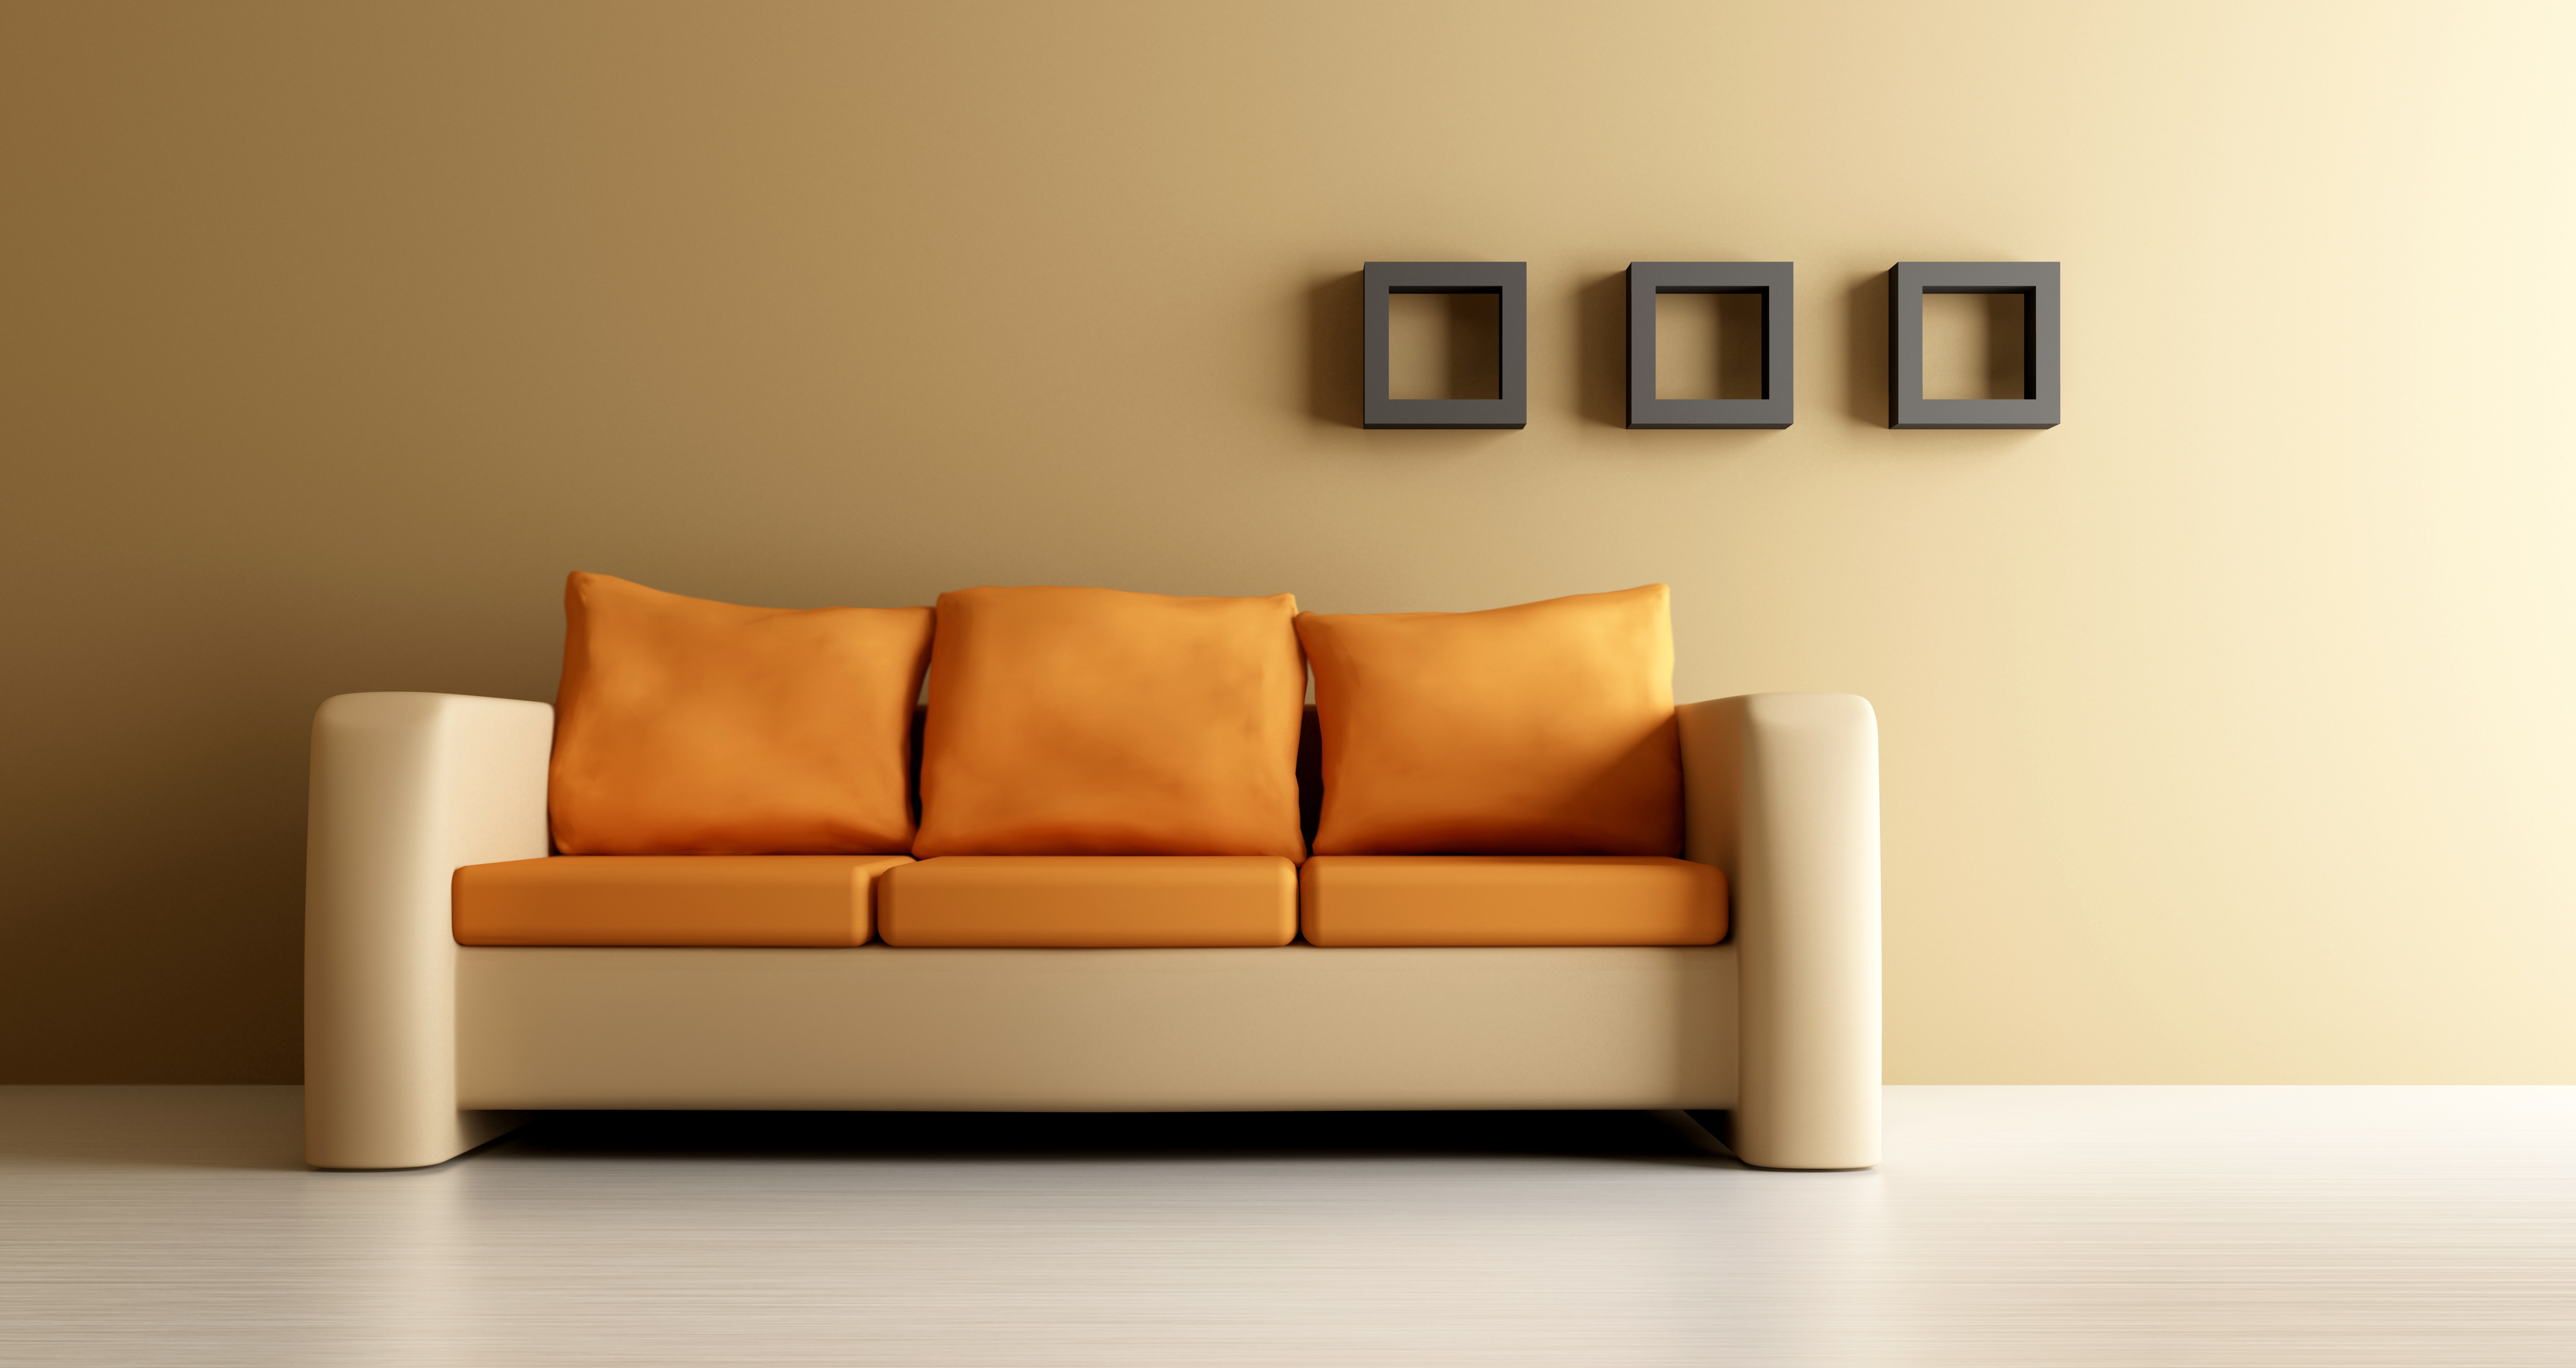 Sofa pictures. Диван в интерьере. Диван у стены. Комната с диваном. Современные дизайнерские диваны.